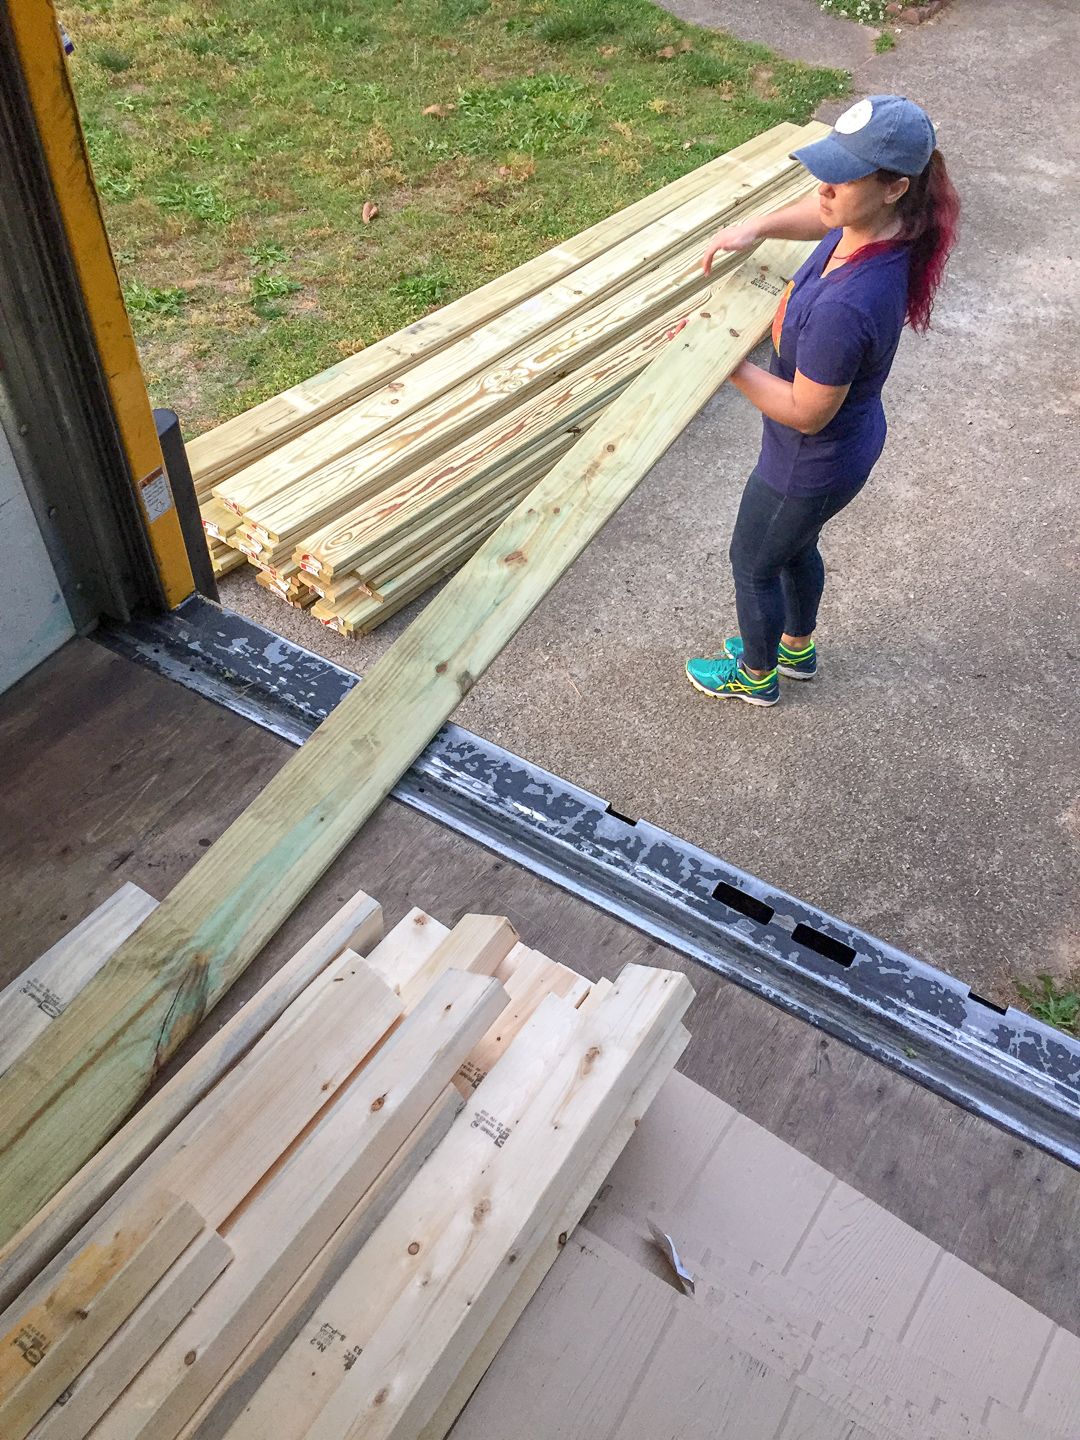 unloading lumber from truck